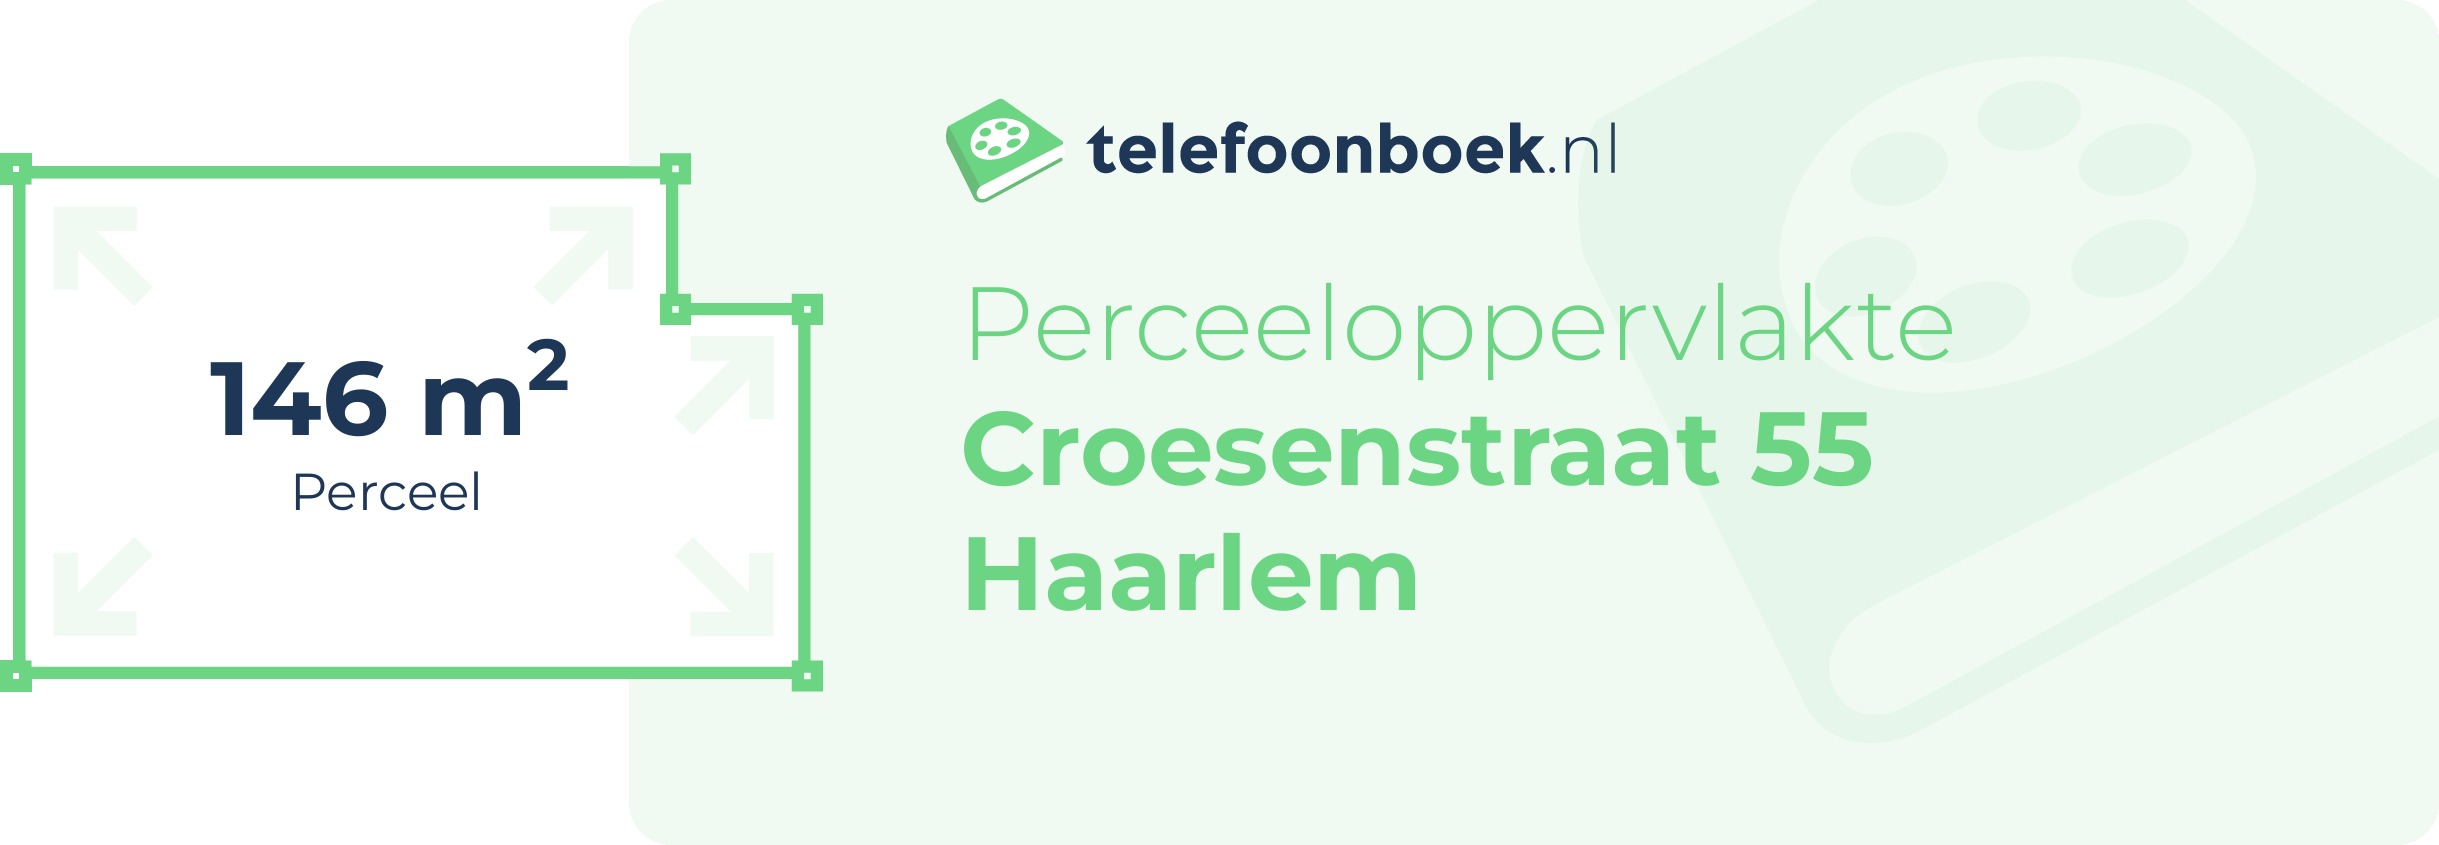 Perceeloppervlakte Croesenstraat 55 Haarlem